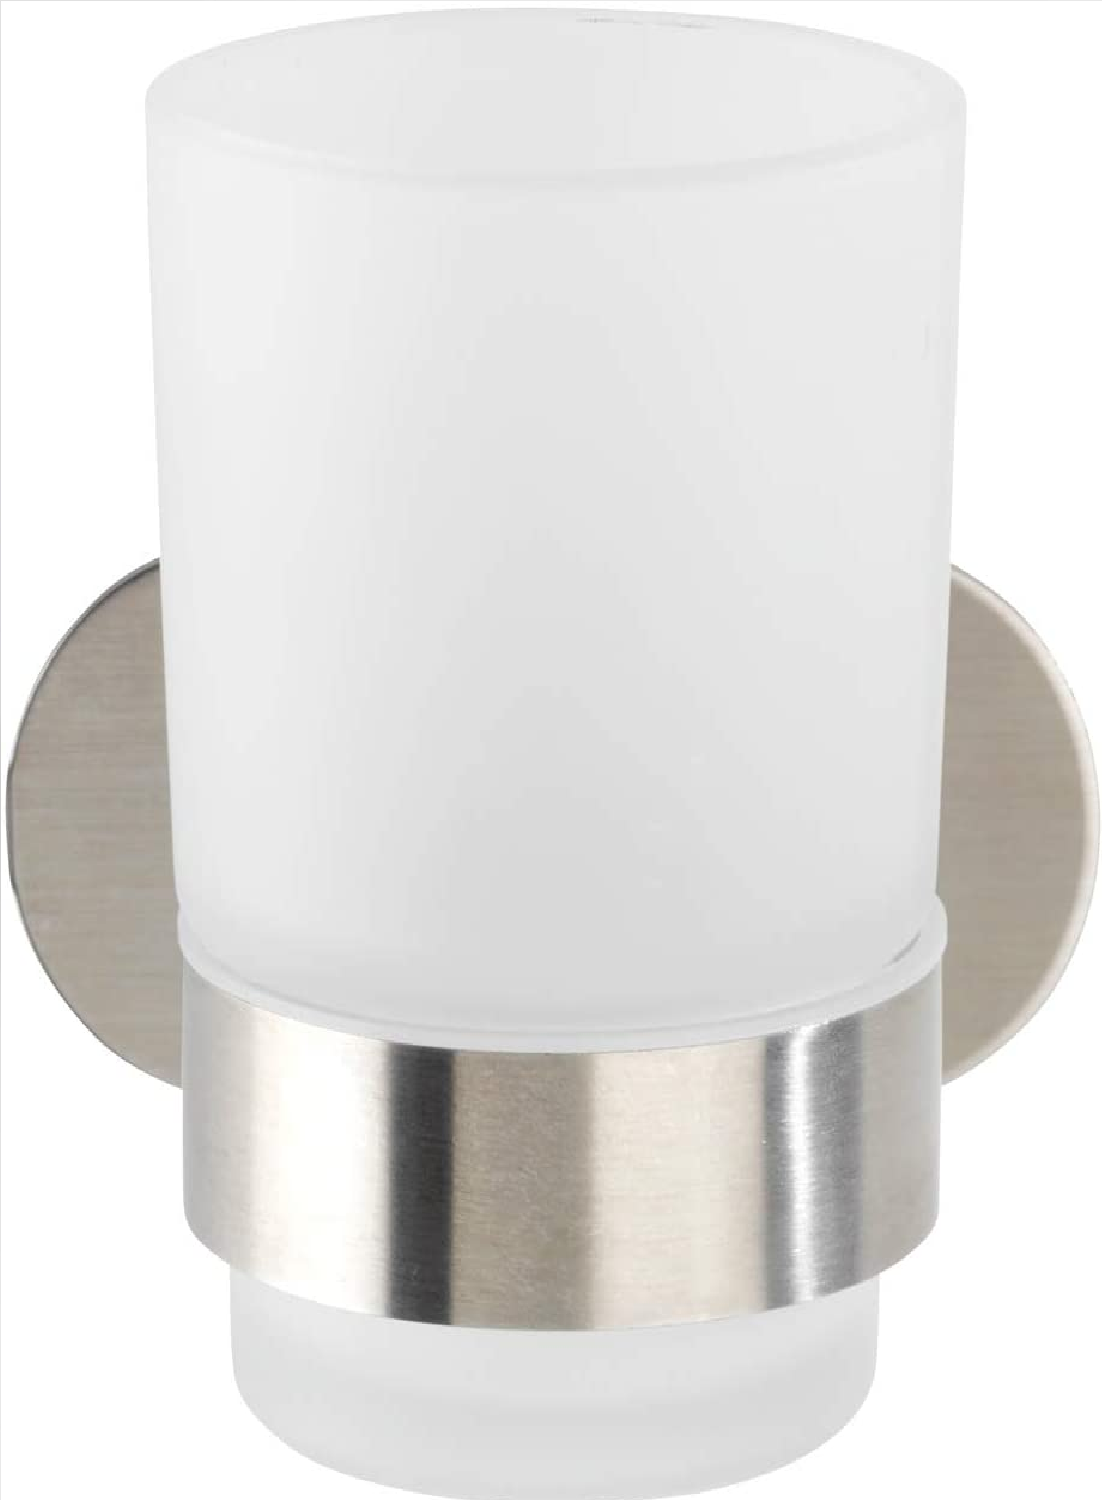 Turbo-Loc® Edelstahl Zahnputzbecherhalter Uno Orea Matt - Zahnbürstenhalter für Zahnbürste und Zahnpasta, Befestigen ohne bohren, Edelstahl rostfrei, 10 x 9.5 x 10 cm, Matt